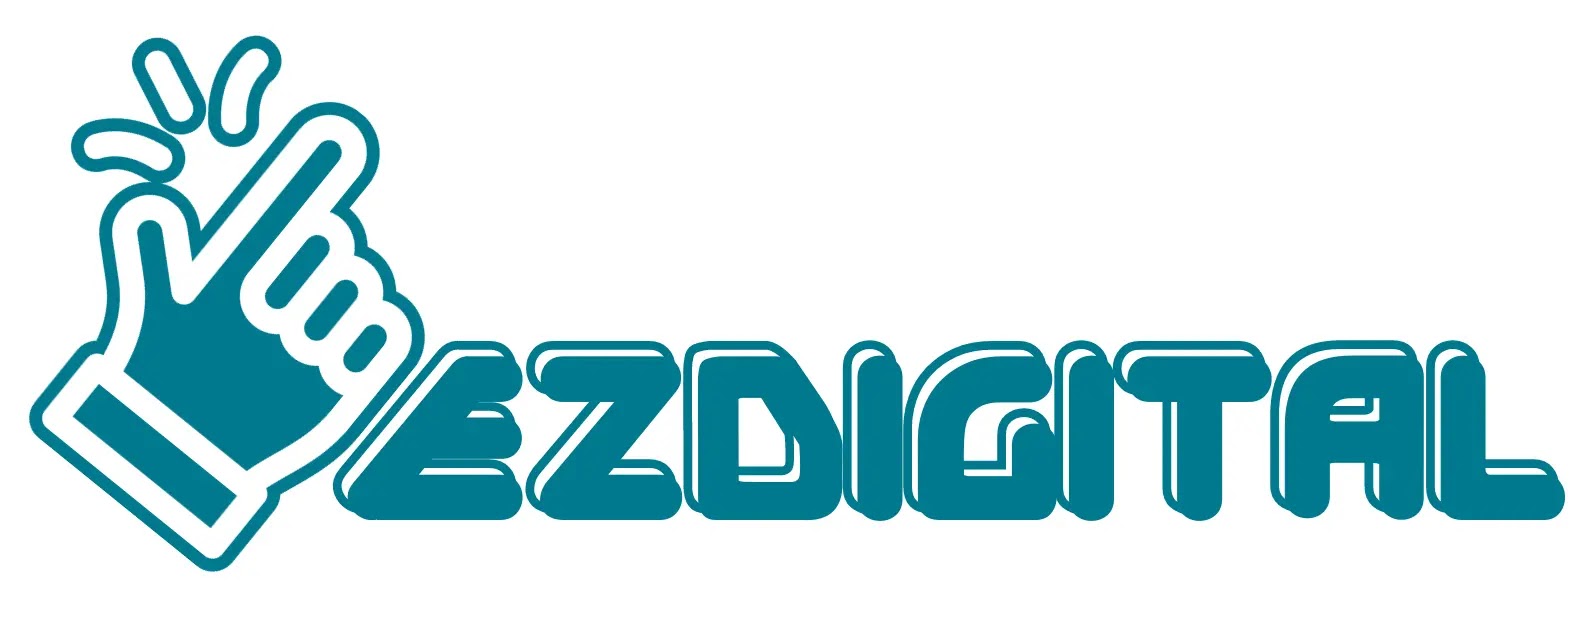 logo 2 ezdigital